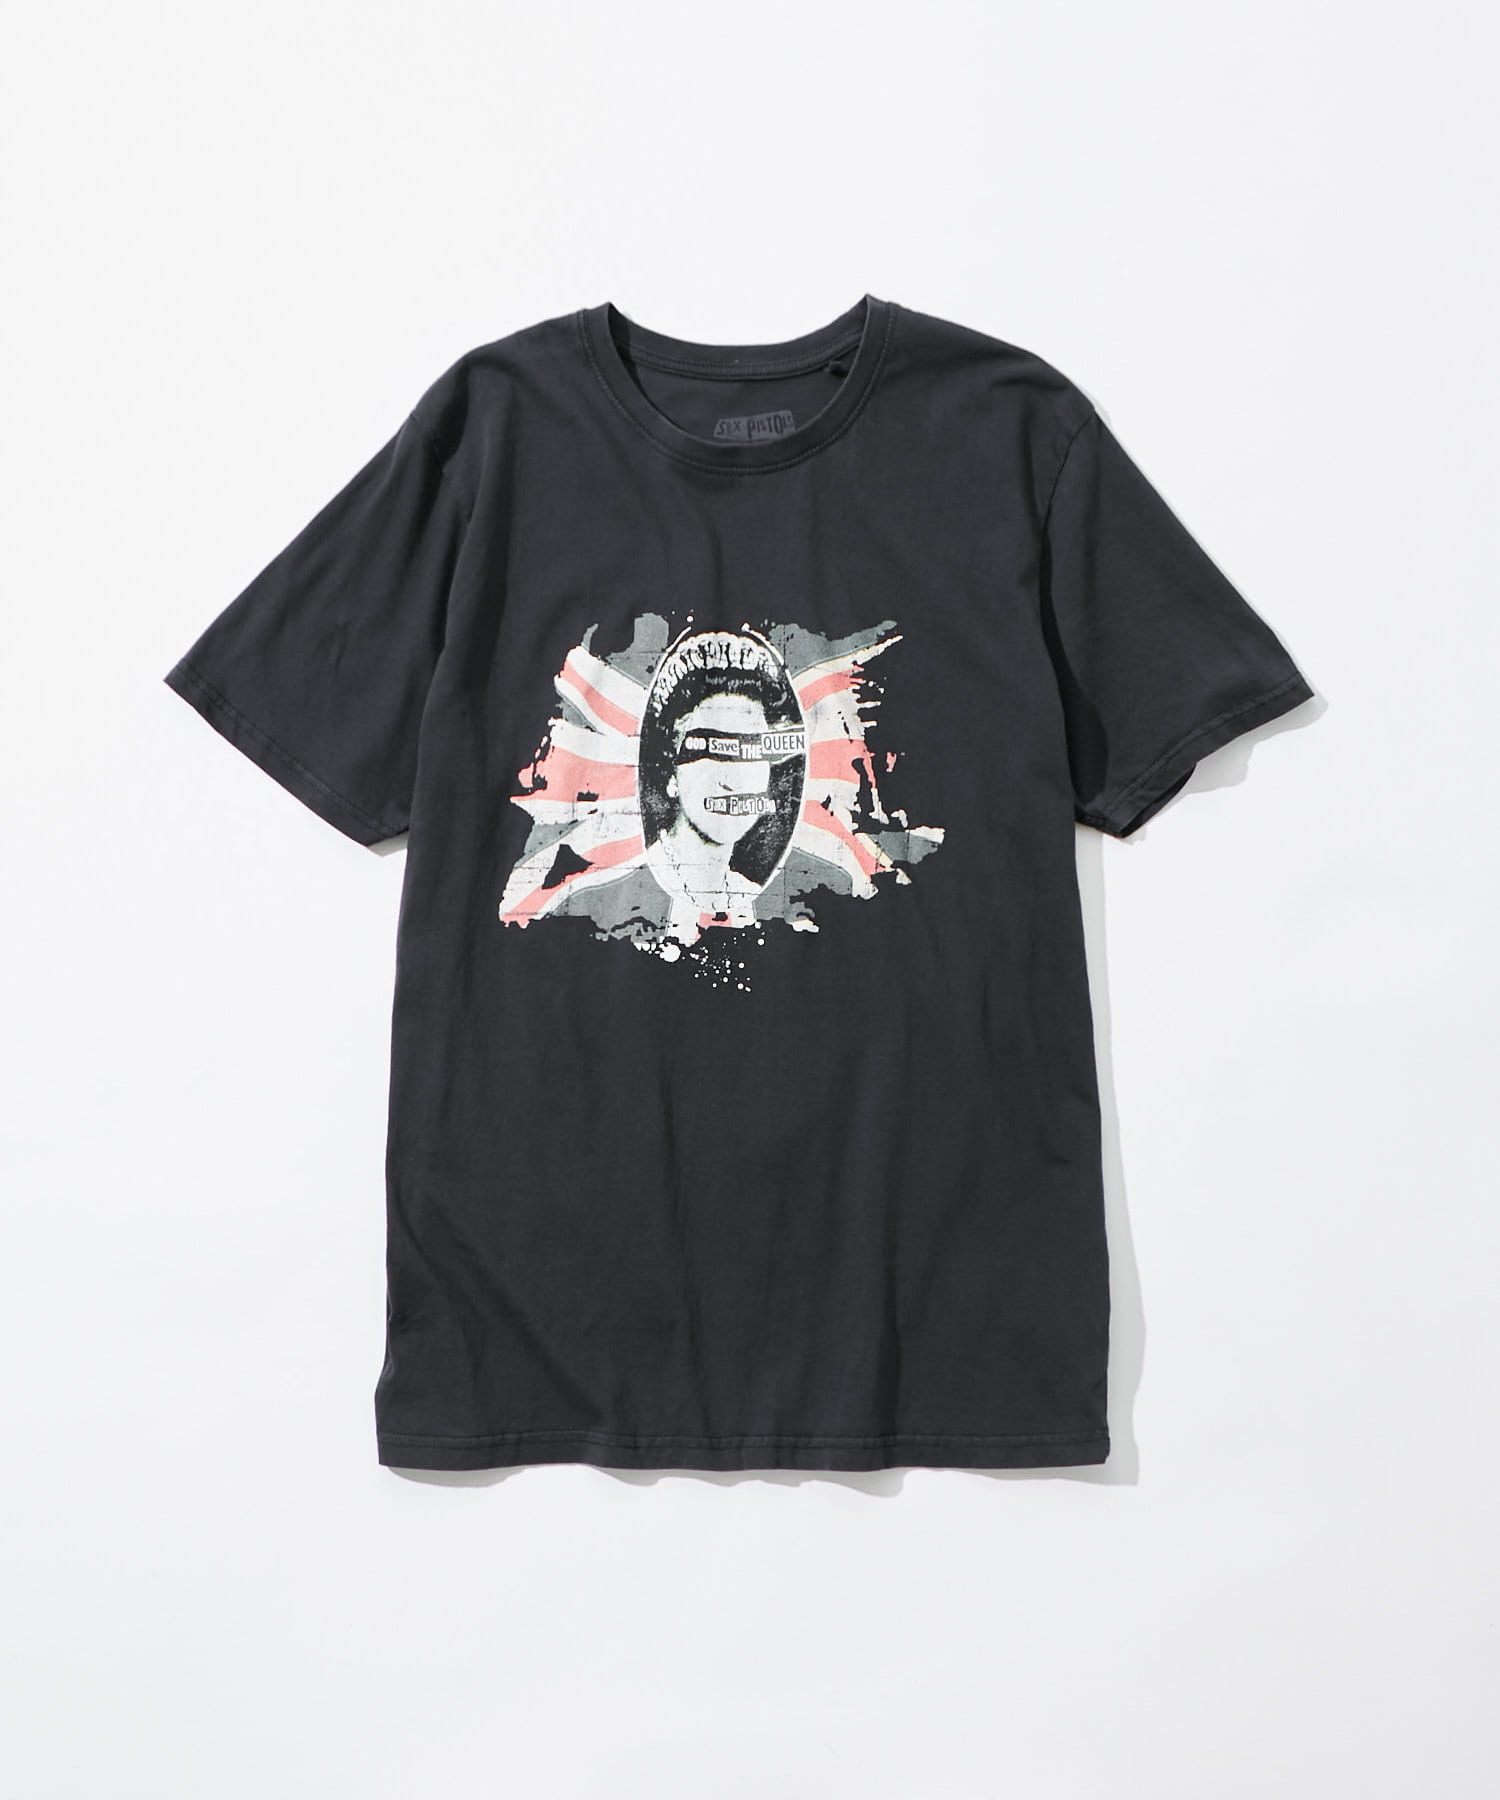 CIAOPANIC(チャオパニック) ヴィンテージライクプリントバンドTシャツ